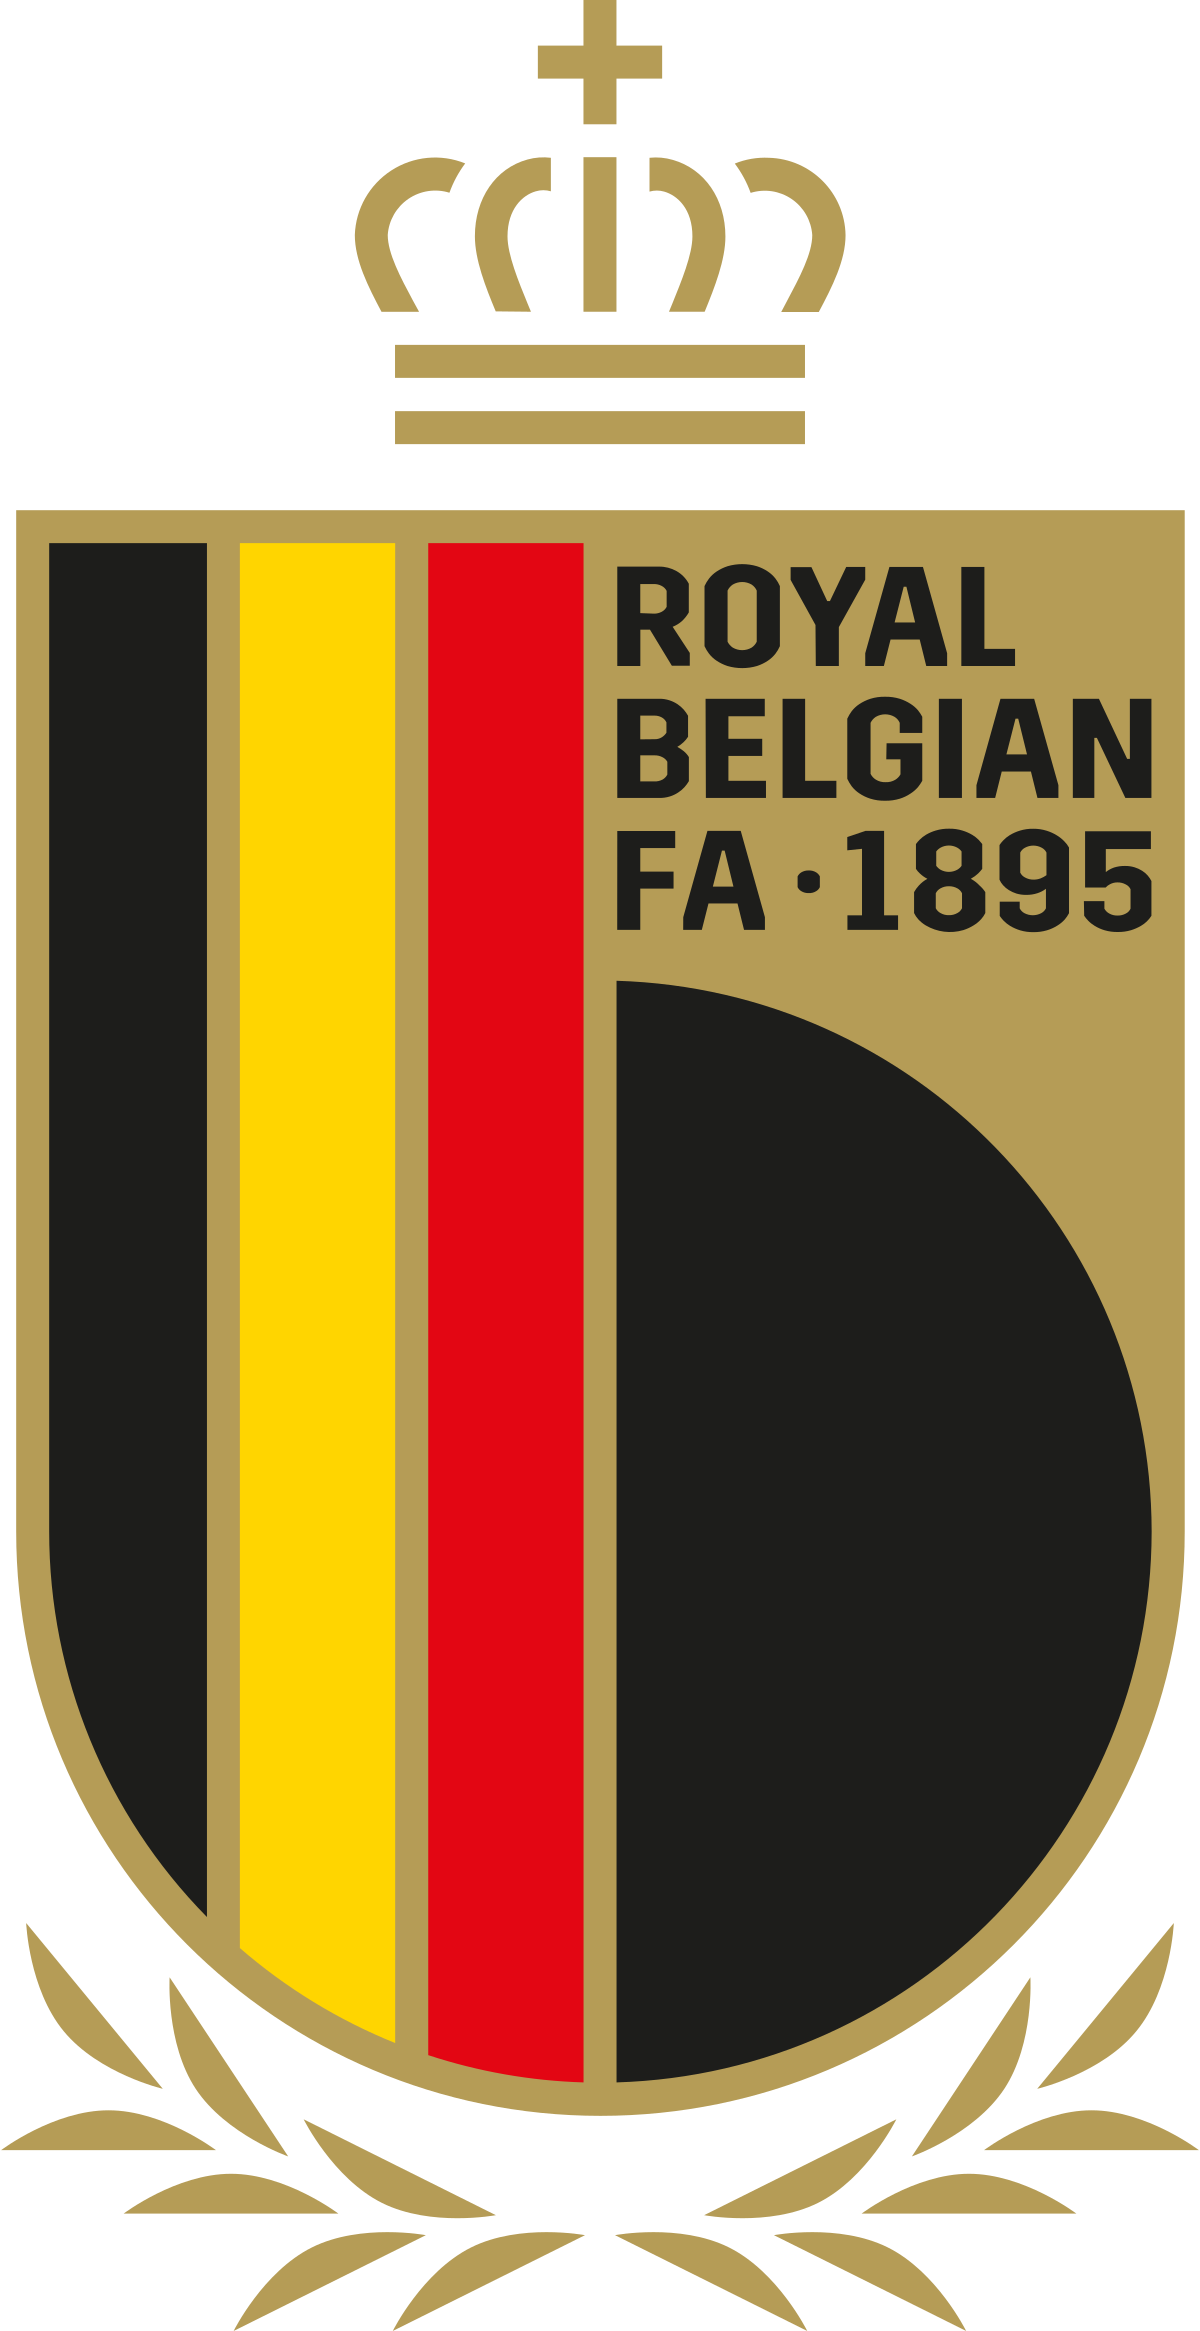 Đội tuyển bóng đá quốc gia Bỉ – Wikipedia tiếng Việt